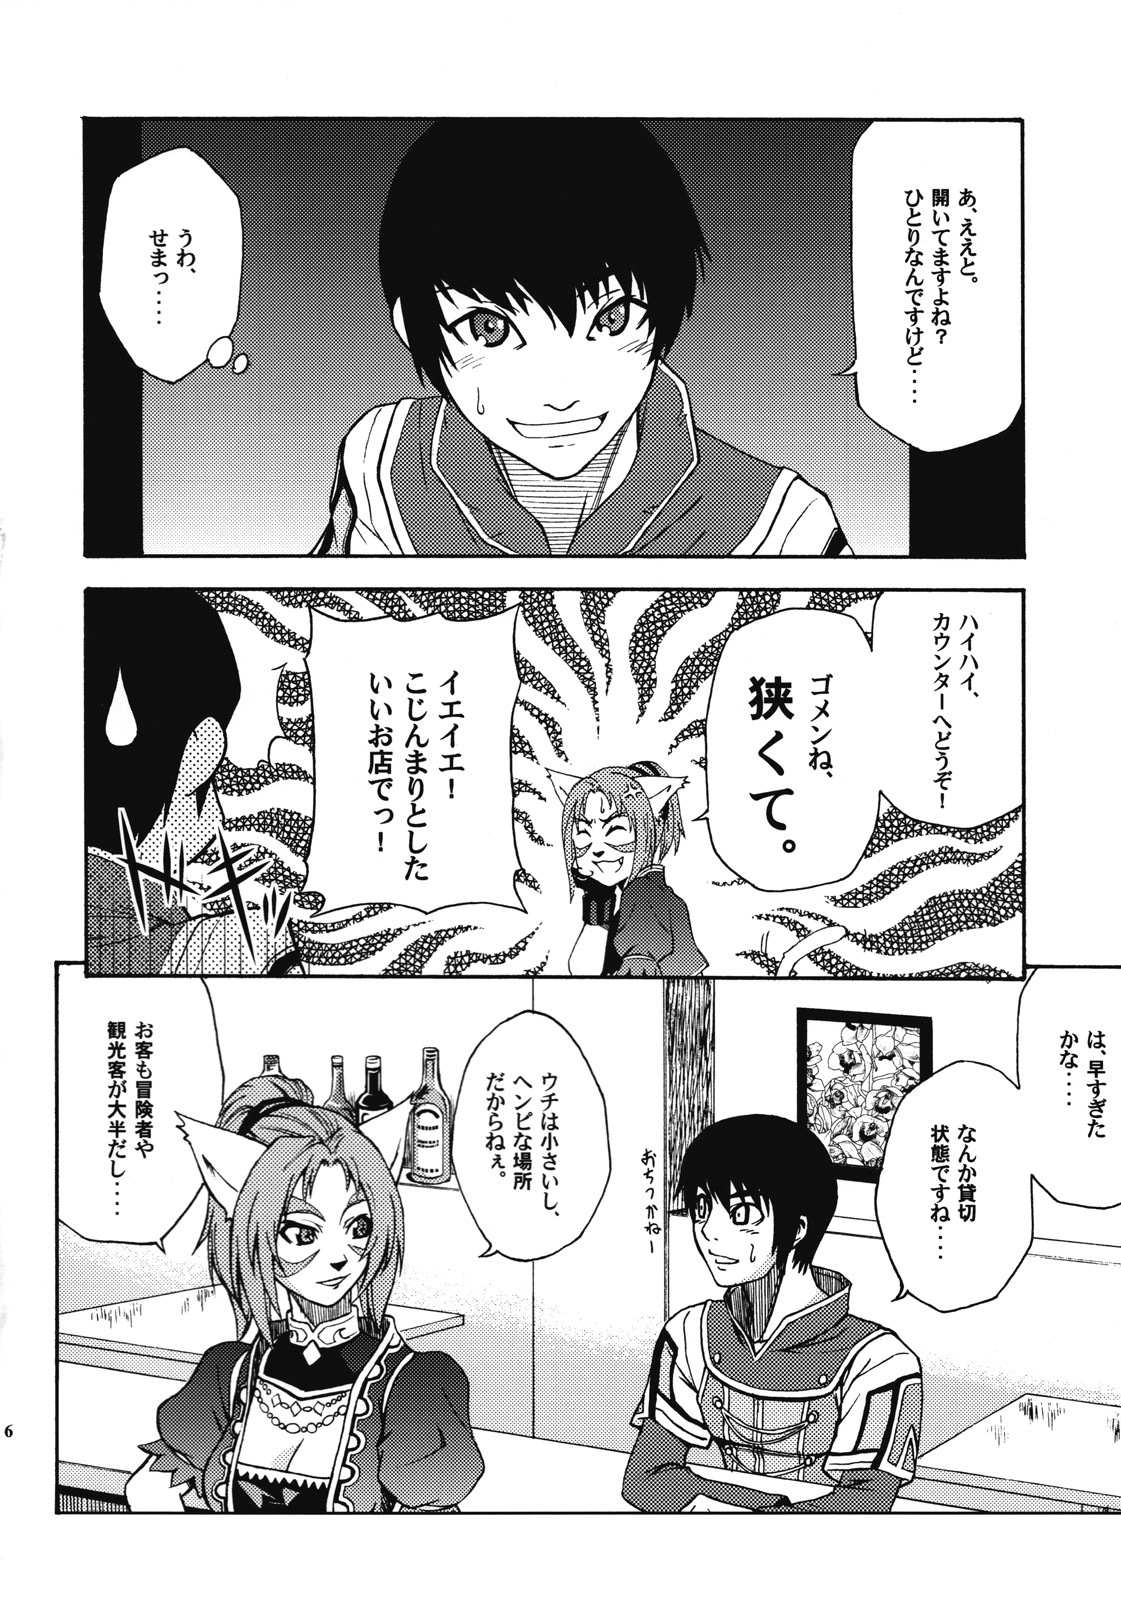 [ARCHENEMY (Kasumi Ryo)] Ein Joghurt wie ein Honig-Dessert. EXTENDED EDITION (Final Fantasy XI) page 5 full